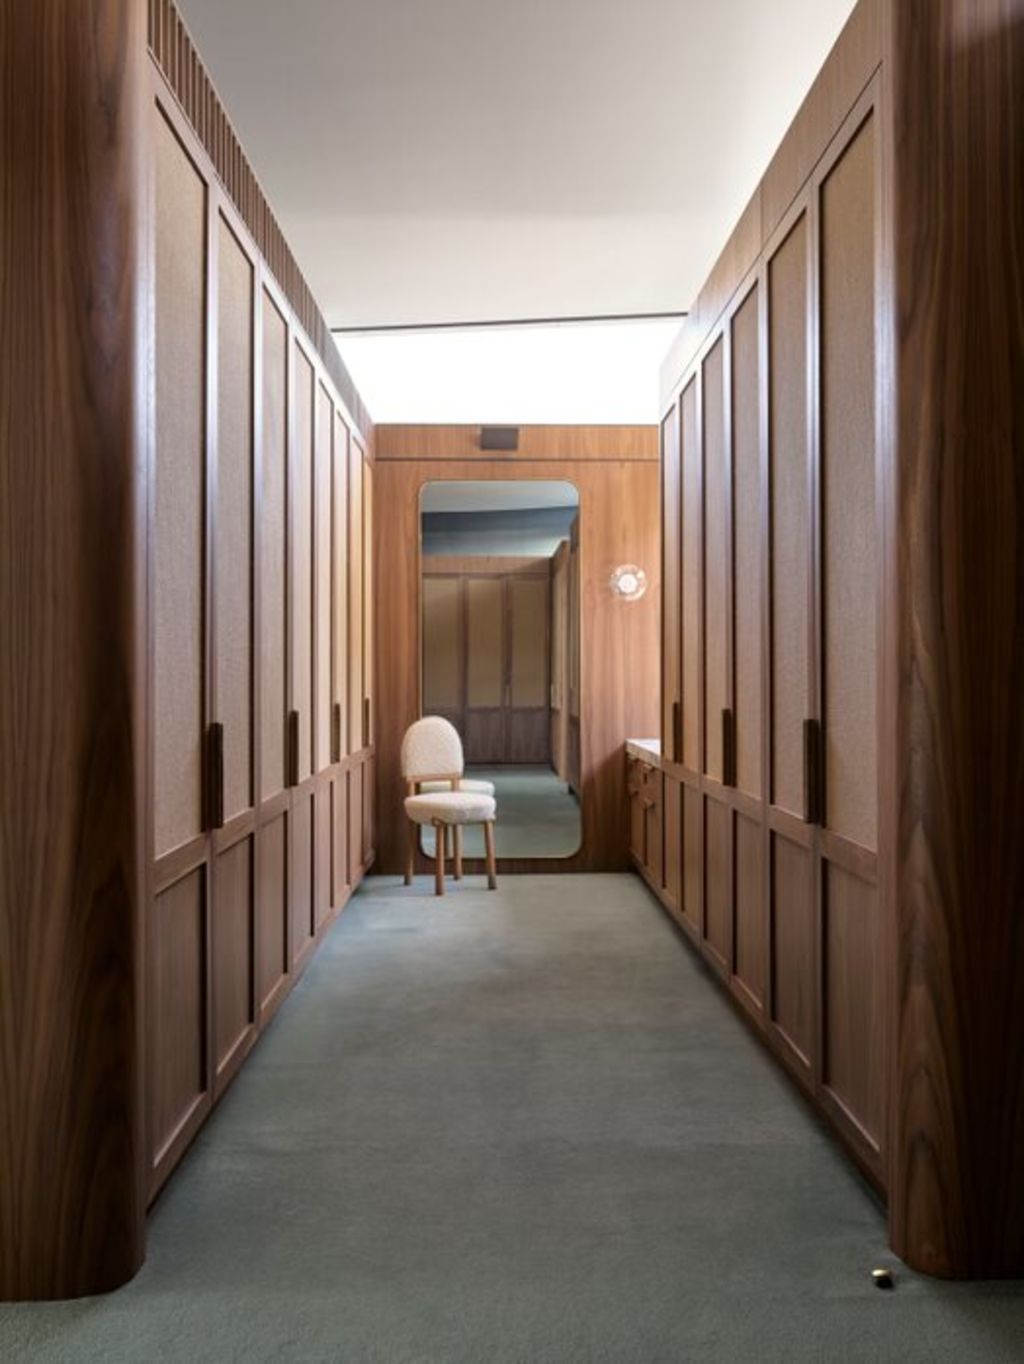 The empanelled wardrobe corridor, also in walnut and rattan. Photo: Anson Smart